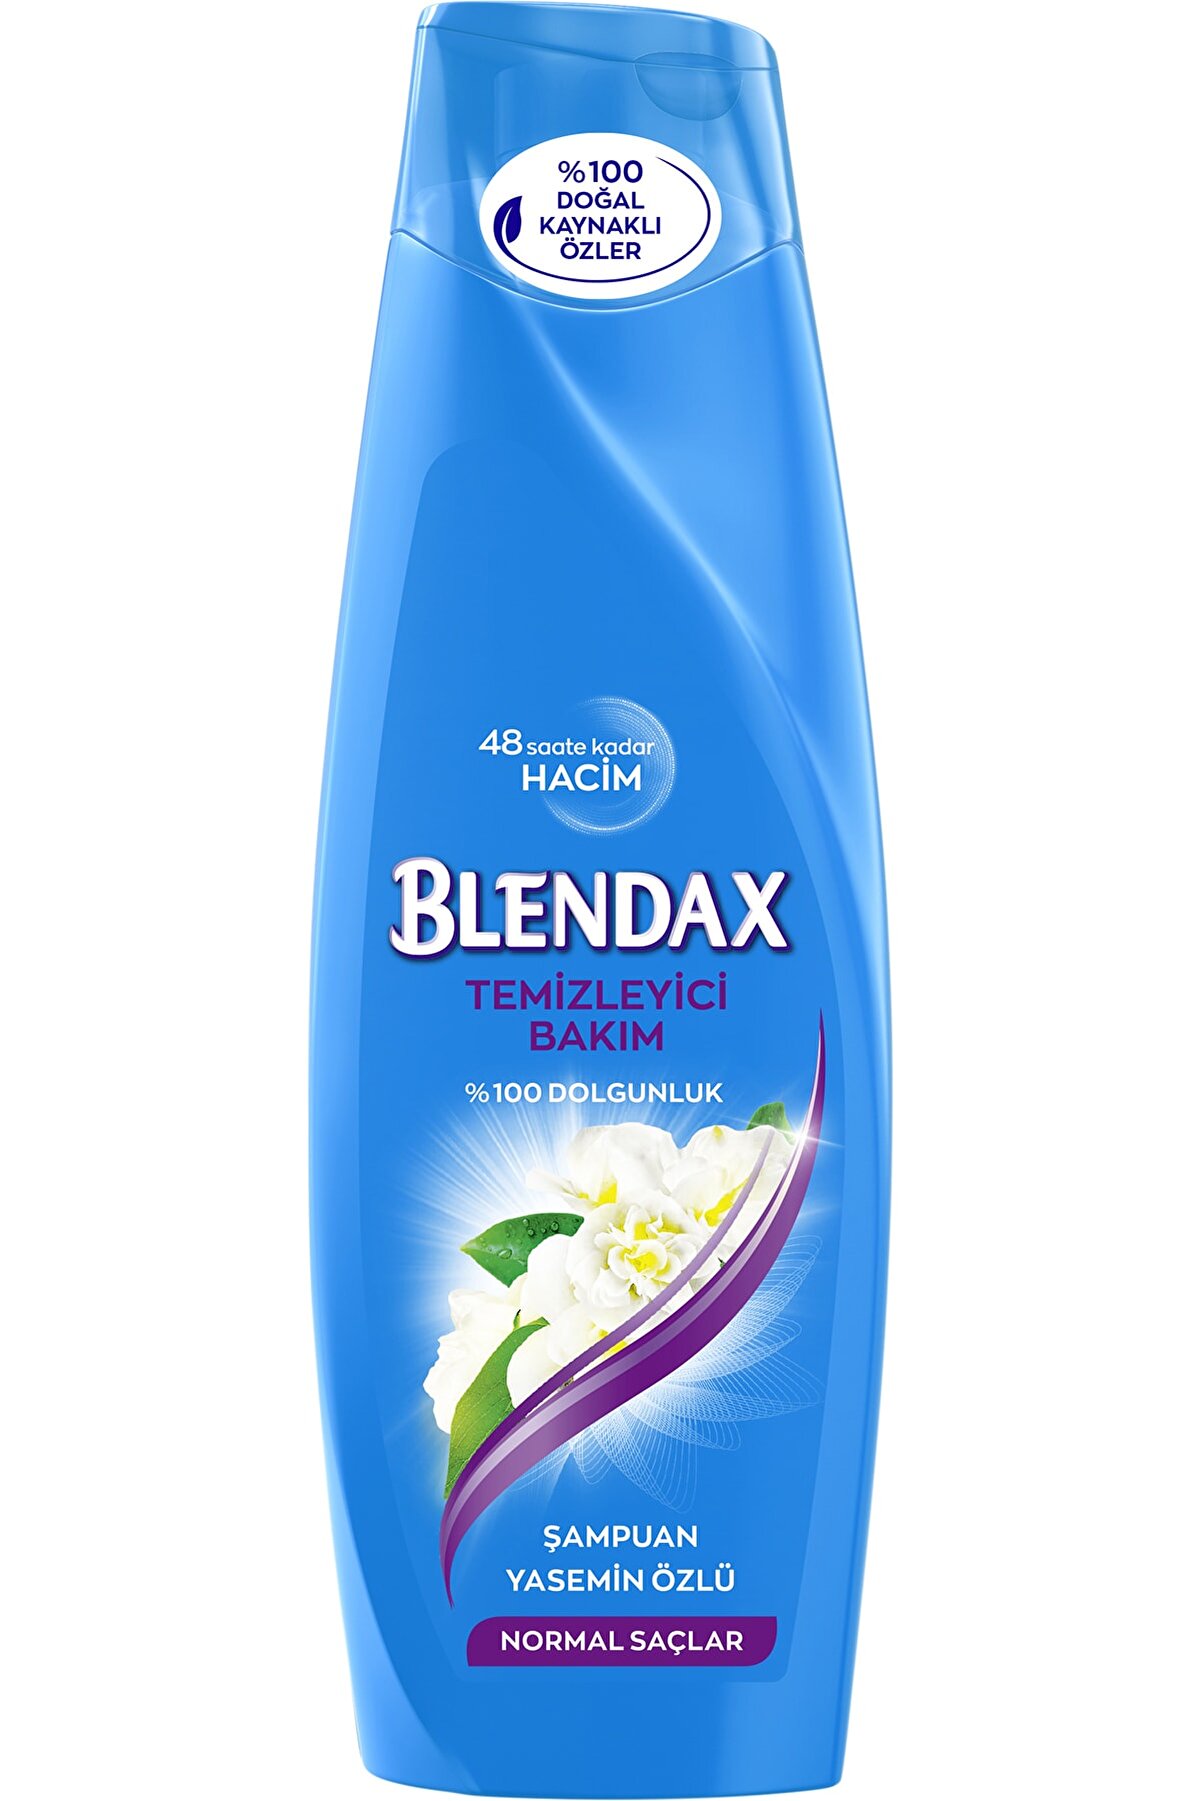 Blendax Temizleyici Bakım Yasemin Özlü Şampuan 360 ml